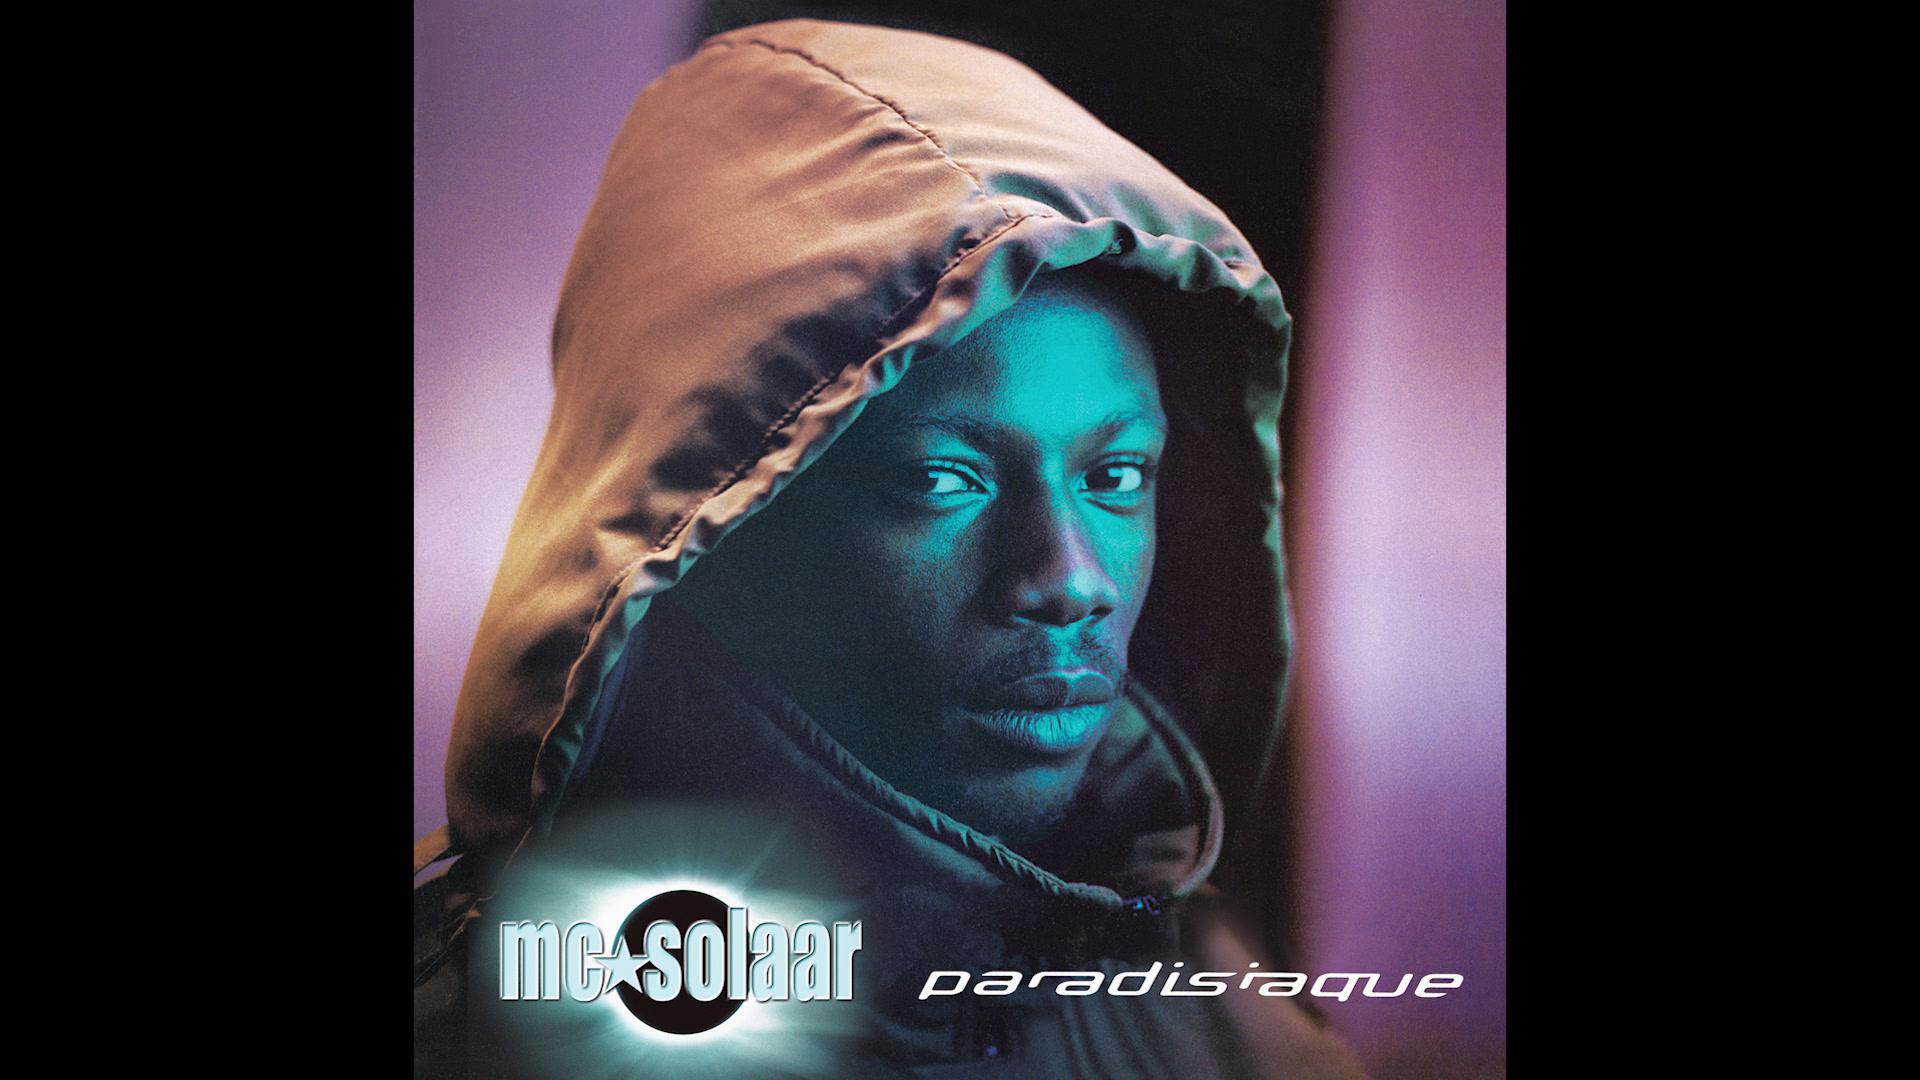 MC Solaar - Paradisiaque (Audio Officiel)